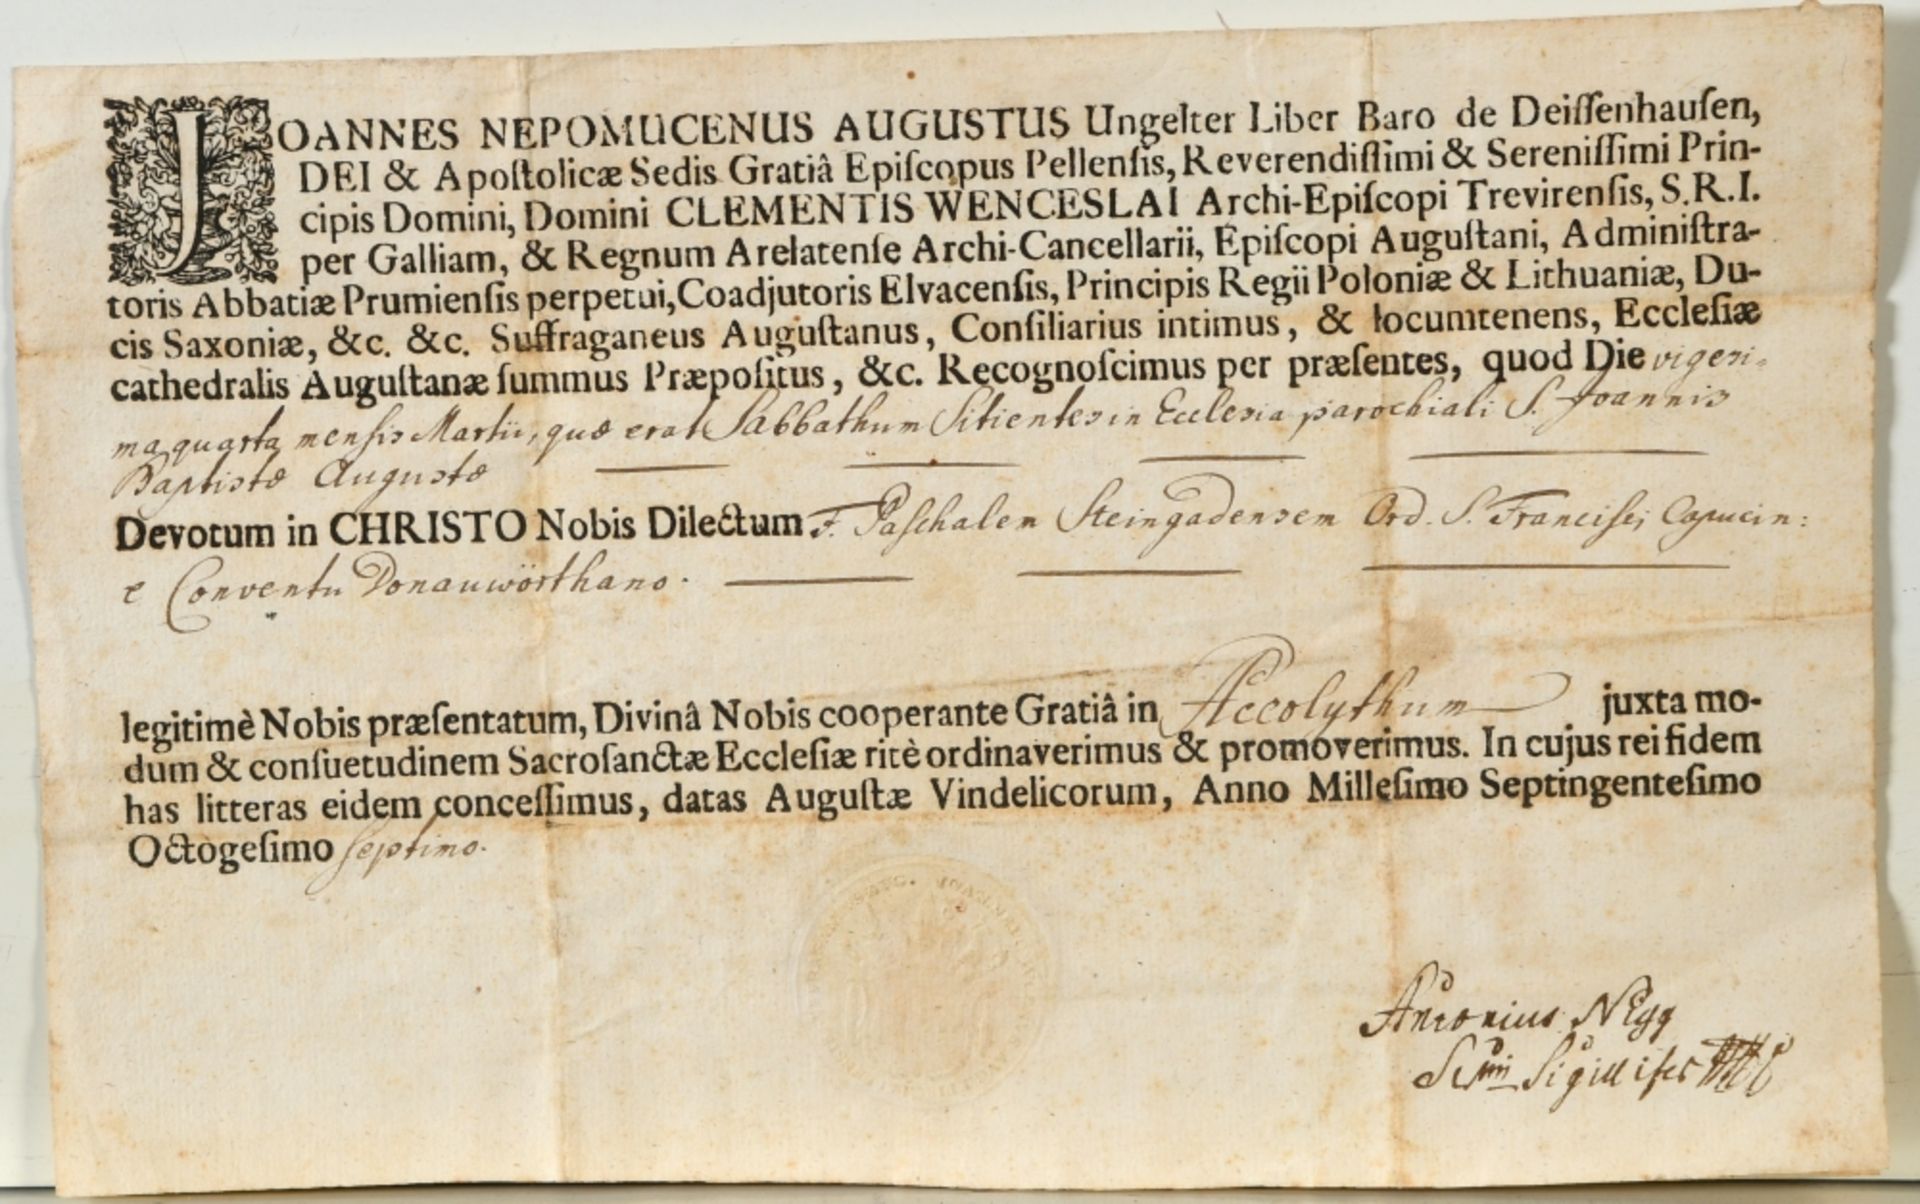 Ernennungsurkunde eines Akolythen, 1787